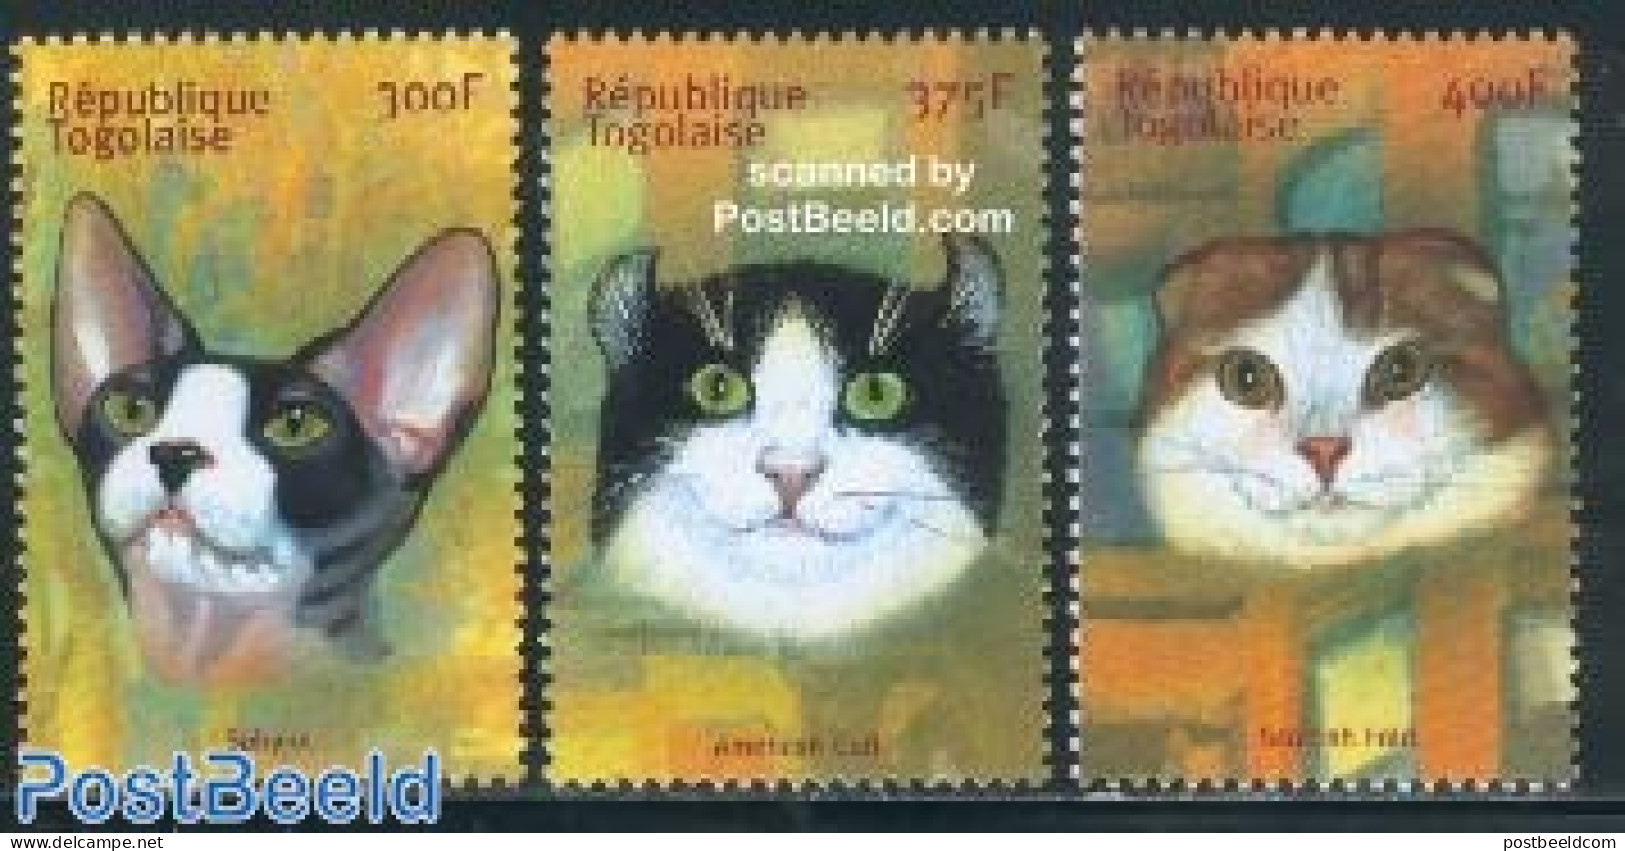 Togo 2001 Cats 3v, Mint NH, Nature - Cats - Togo (1960-...)